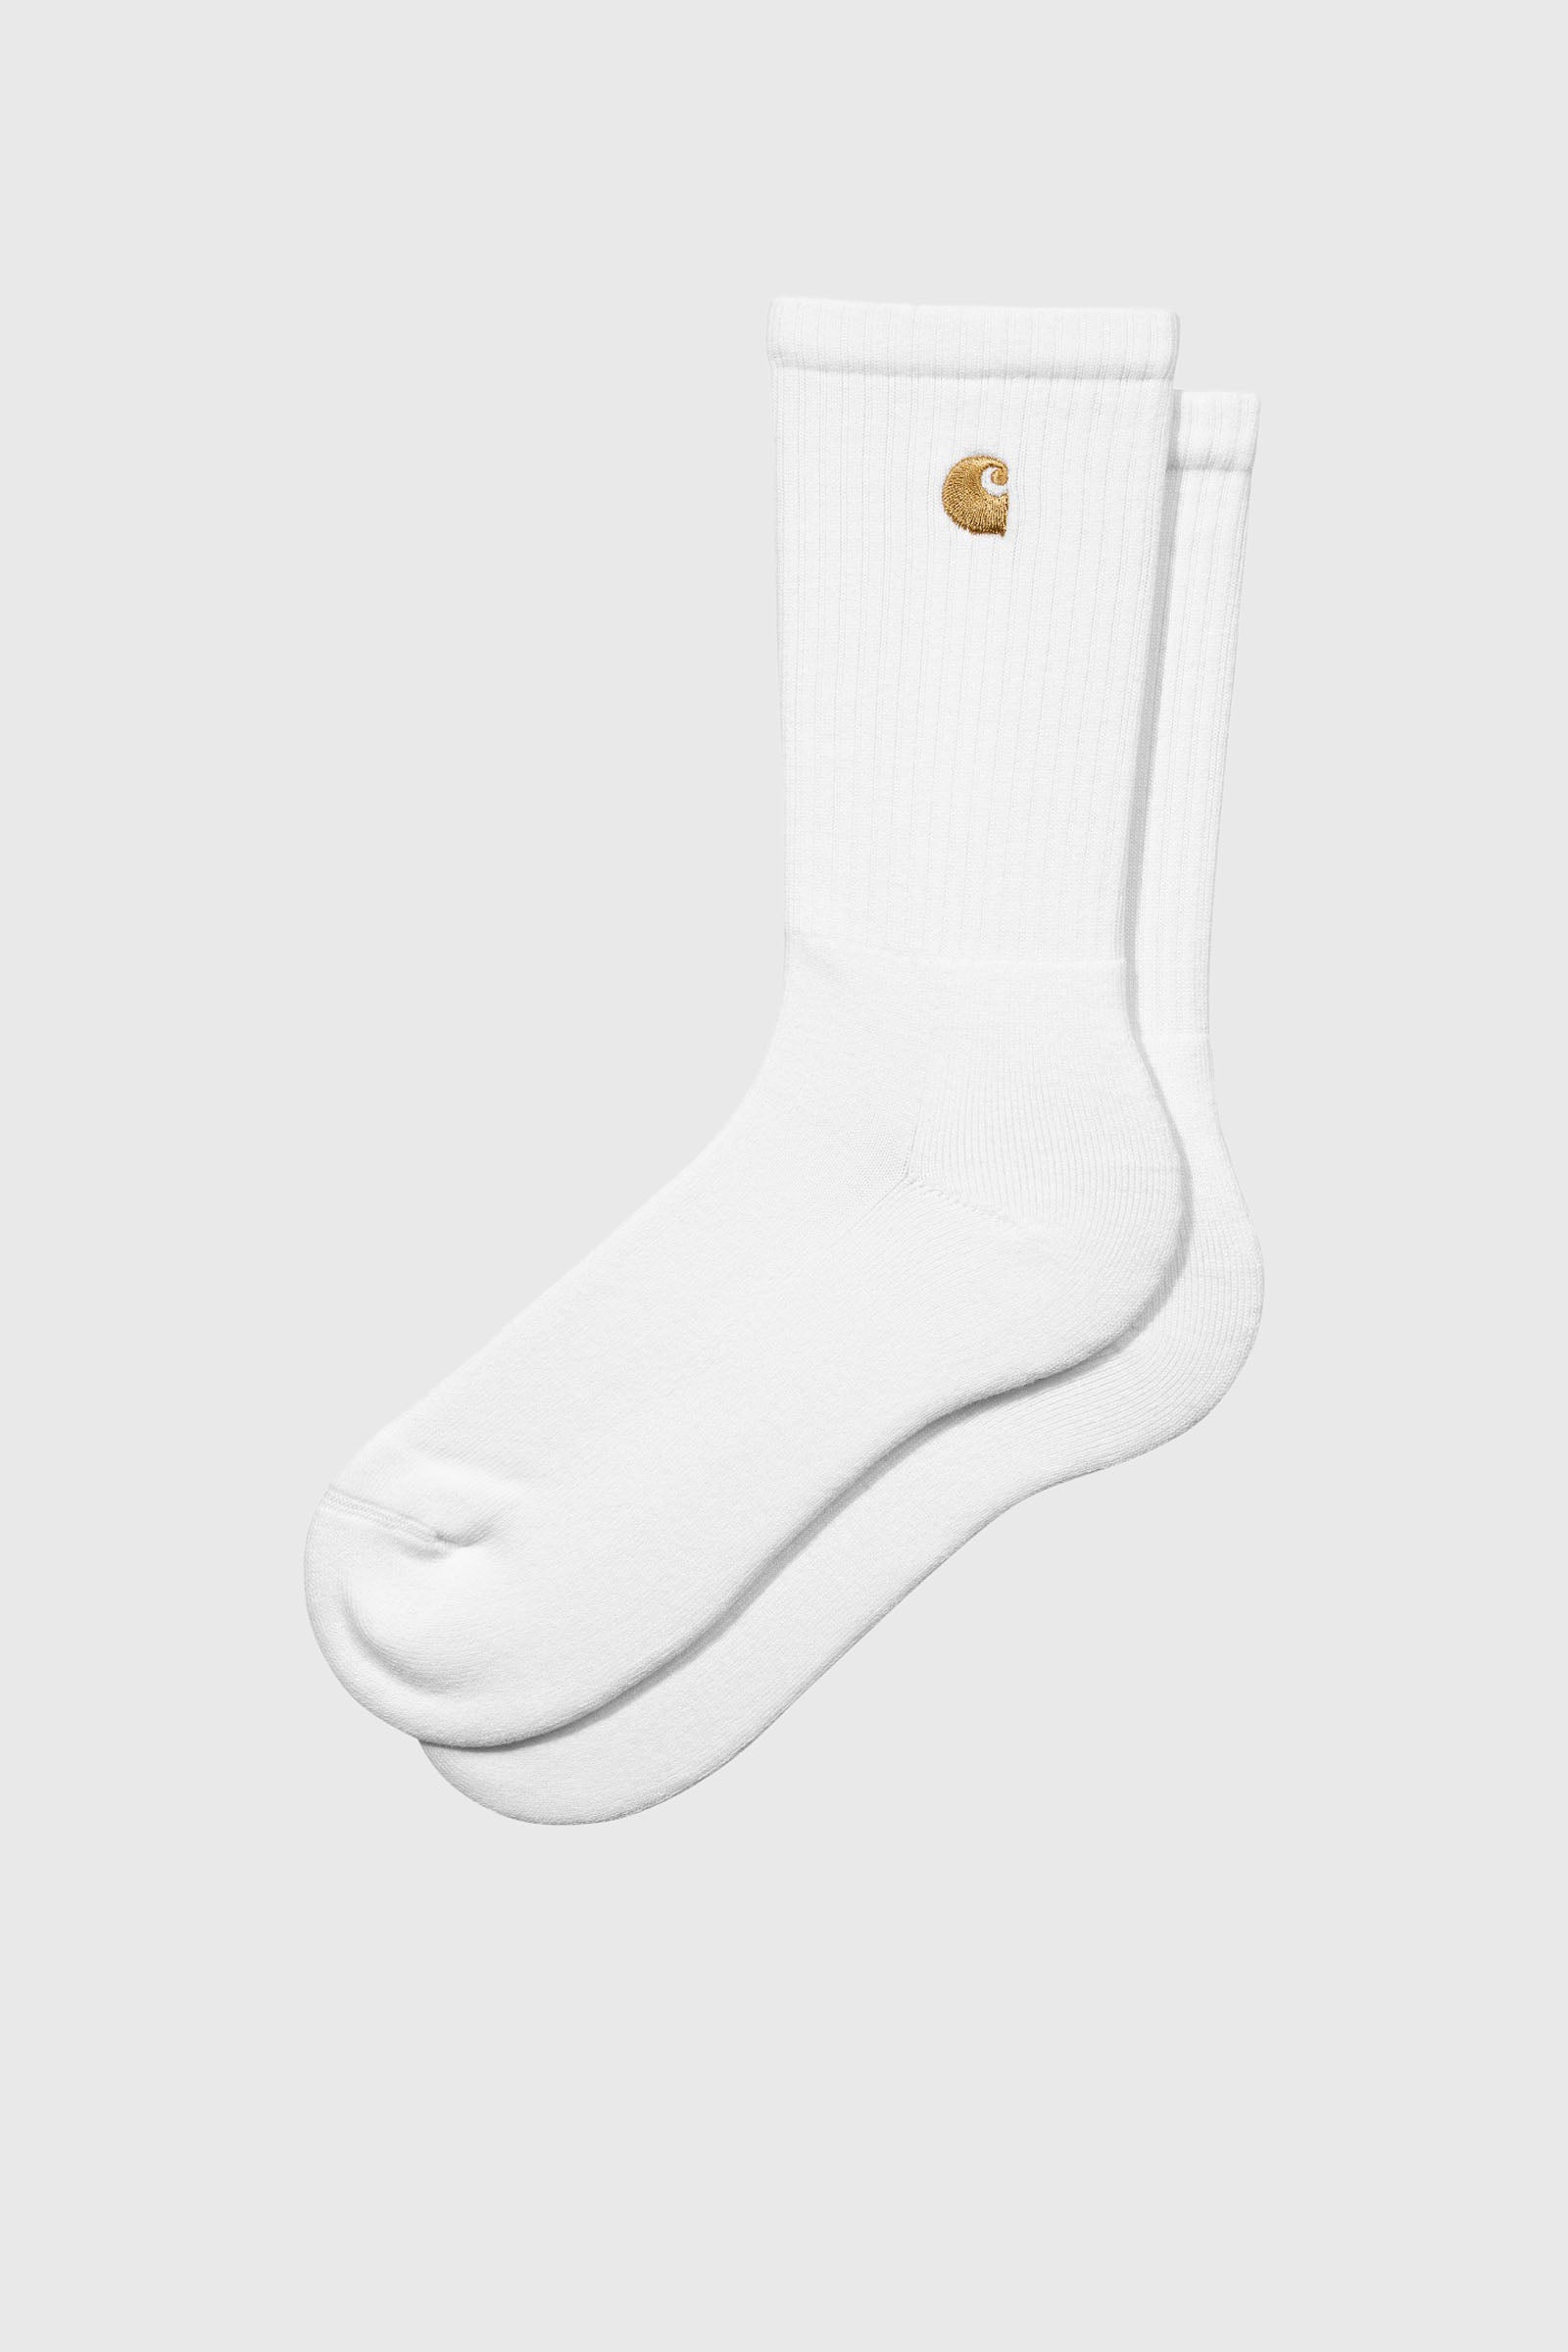 Carhartt Wip Chase Socks Bianco - 1